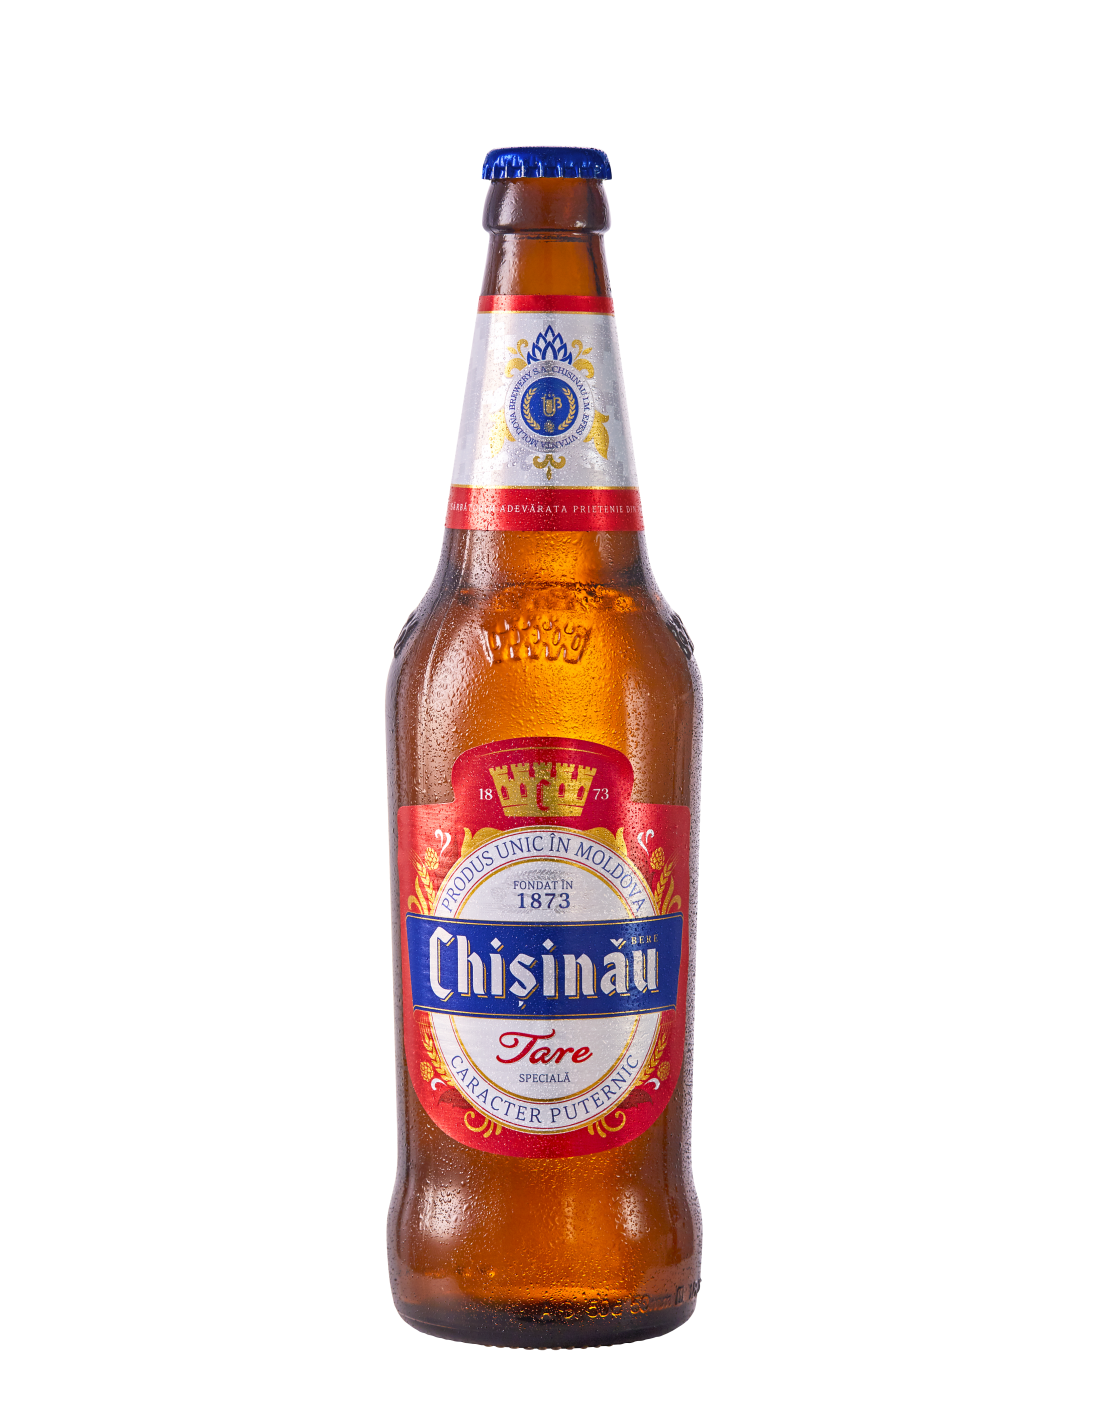 Bere blonda Chisinau tare, 7% alc., 0.5L, Republica Moldova alcooldiscount.ro